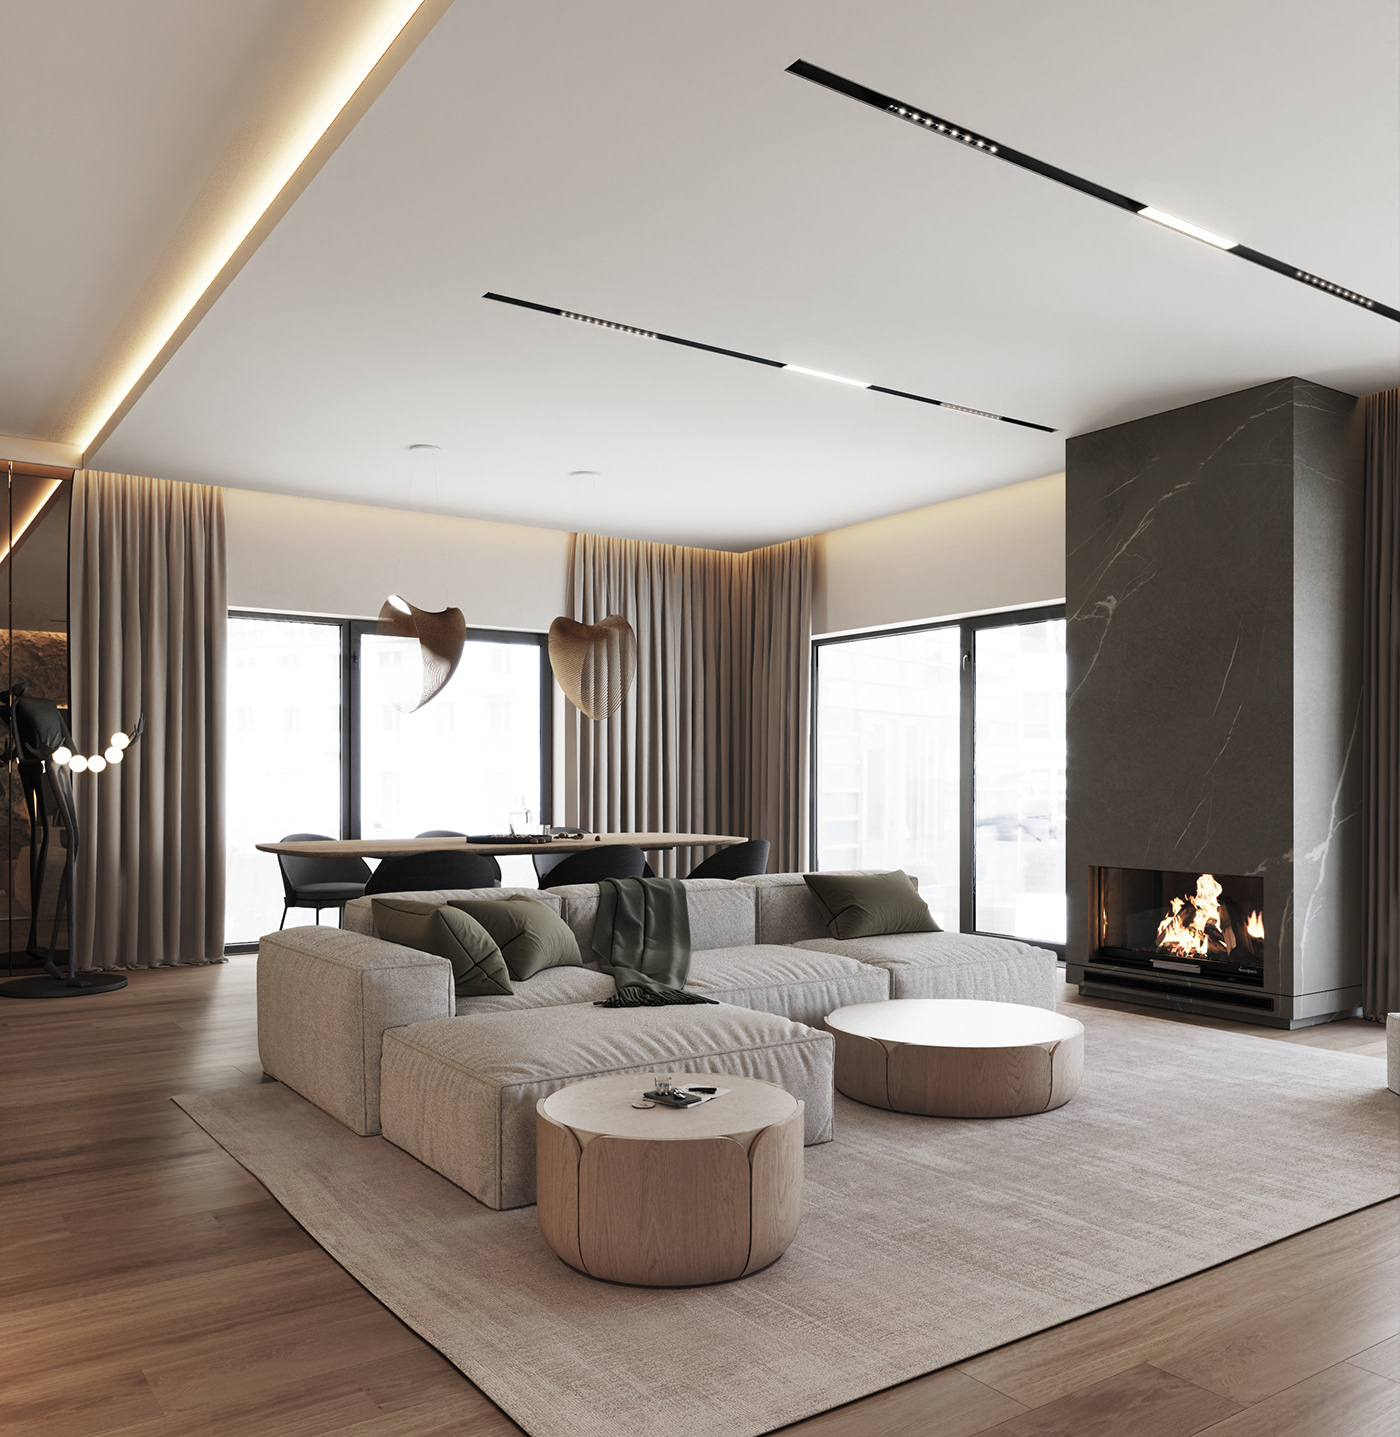 Interior minimalizm 3ds max visualization architecture